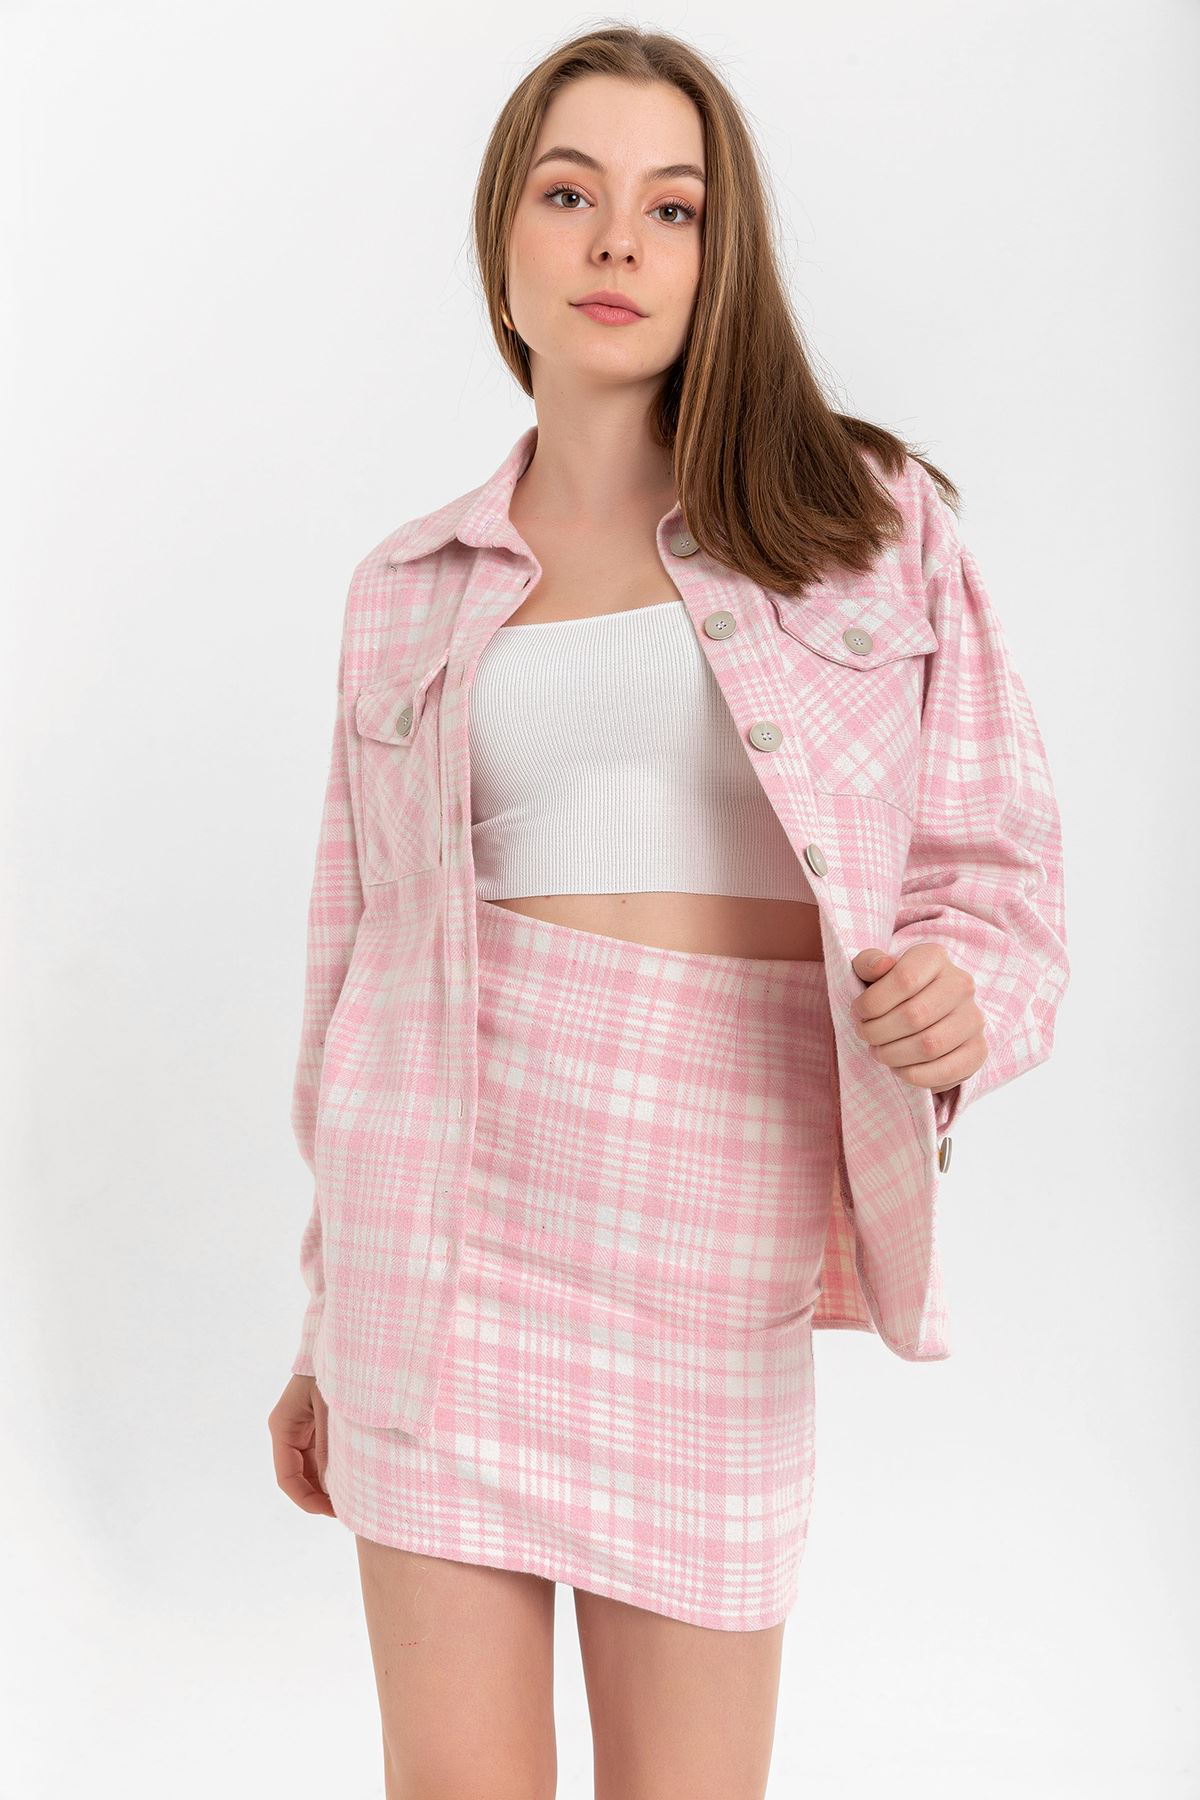 Lumberjack Fabric Tight Fit Striped Mini Skirt - Pink